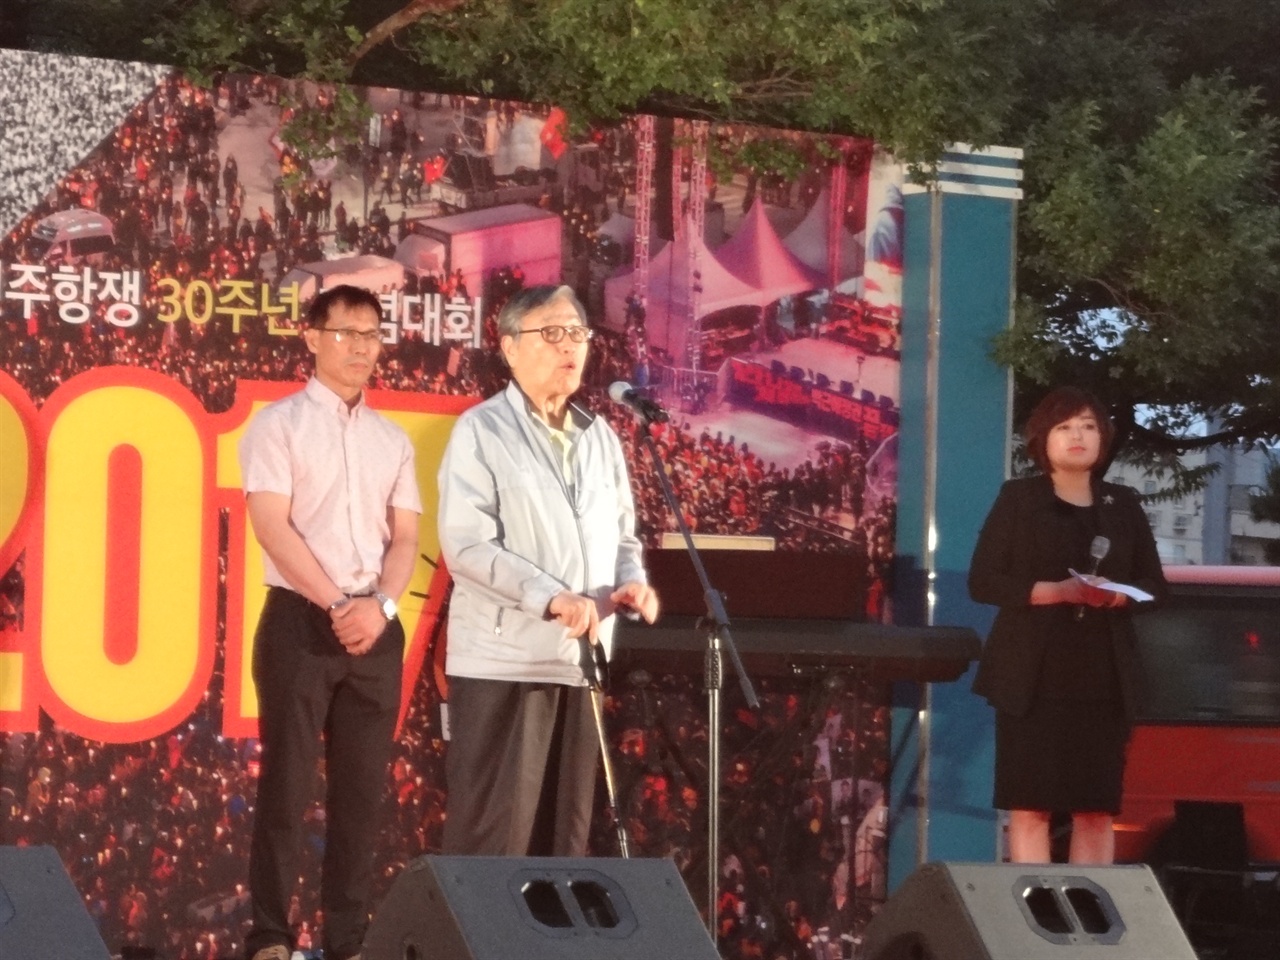 2017년 6월 10일, 울산에서 6.10민주항쟁 기념으로 열린 집회에서 당시 울산에서 민주항쟁에 참가하였던 김진석 선생님을 포함한 2명이 공로상에서 수상을 받았고 그중 한명인 김진석 선생이 발언을 하였다.